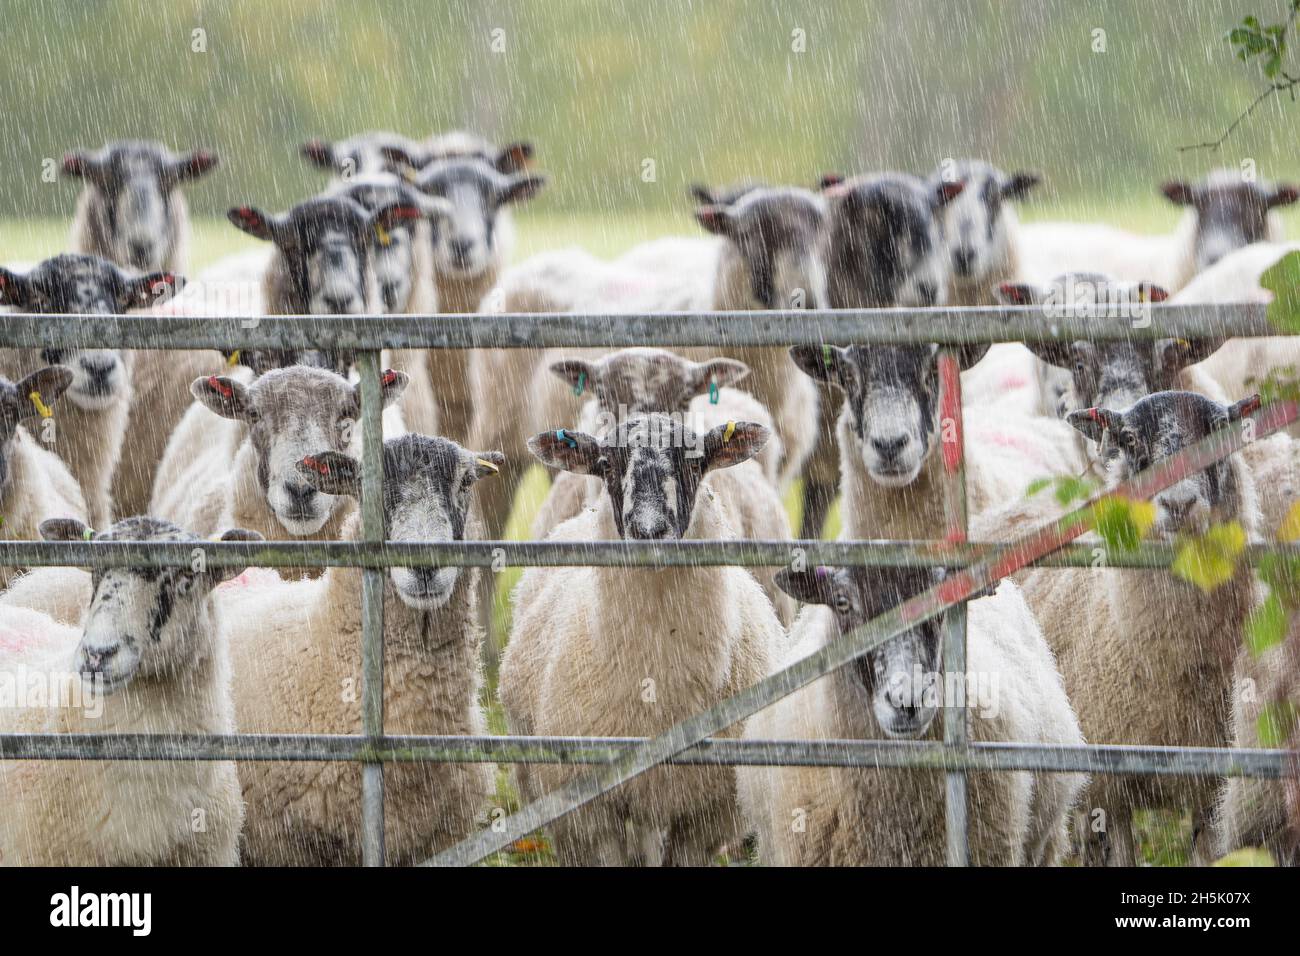 Eine Schar nasser Schafe aus Großbritannien, die im strömenden Regen warten und durch ein Tor auf dem Land blicken und direkt in die Kamera blicken. Britisches Vieh im Freien. Stockfoto